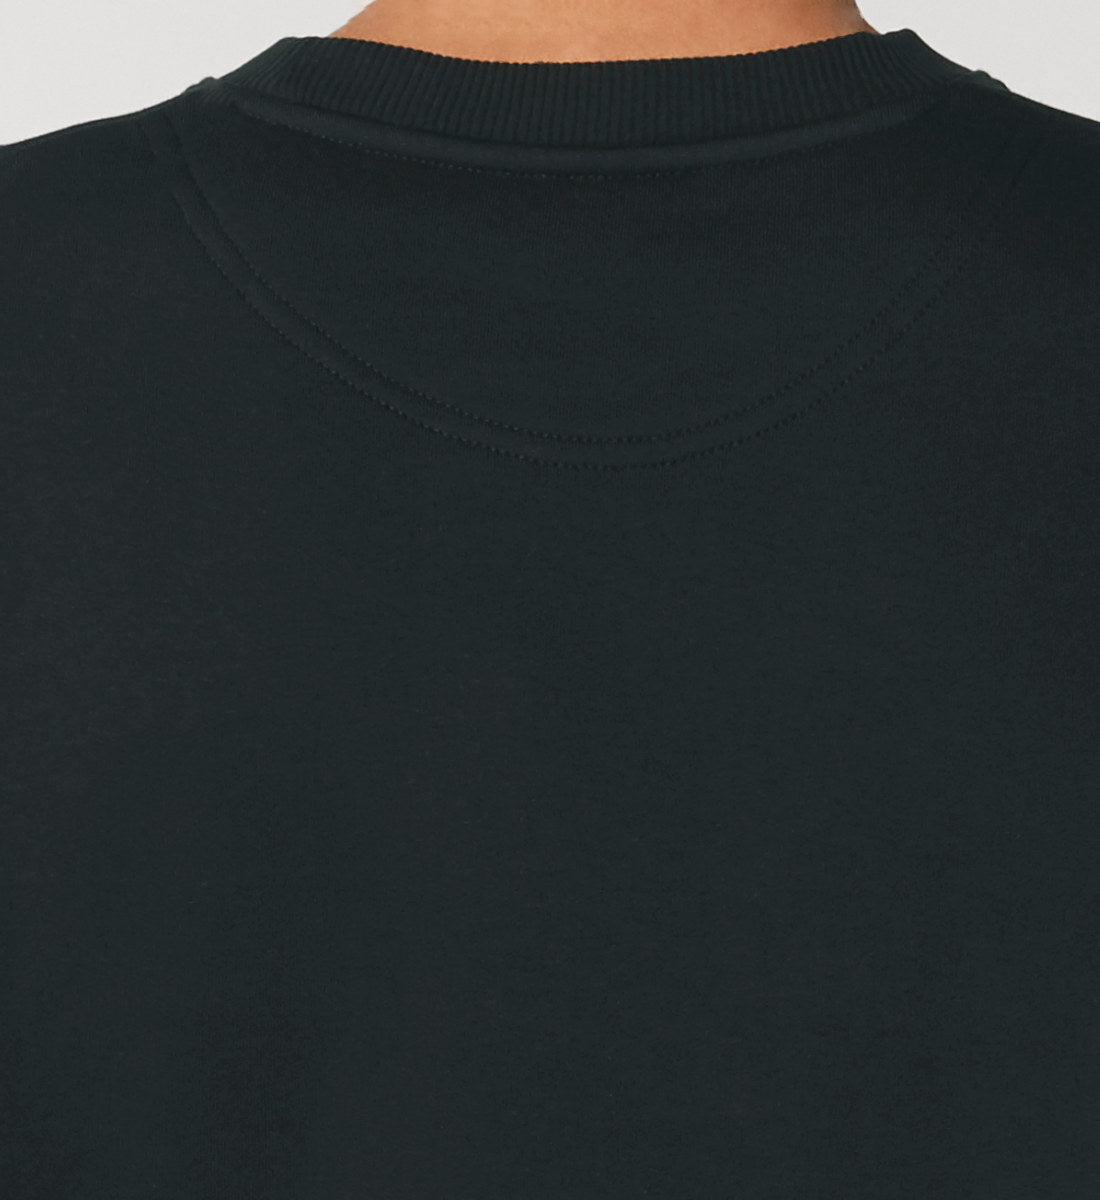 Schwarzes Sweatshirt Unisex für Frauen und Männer bedruckt mit dem Design der Roger Rockawoo Kollektion Surf where wet dreams become true